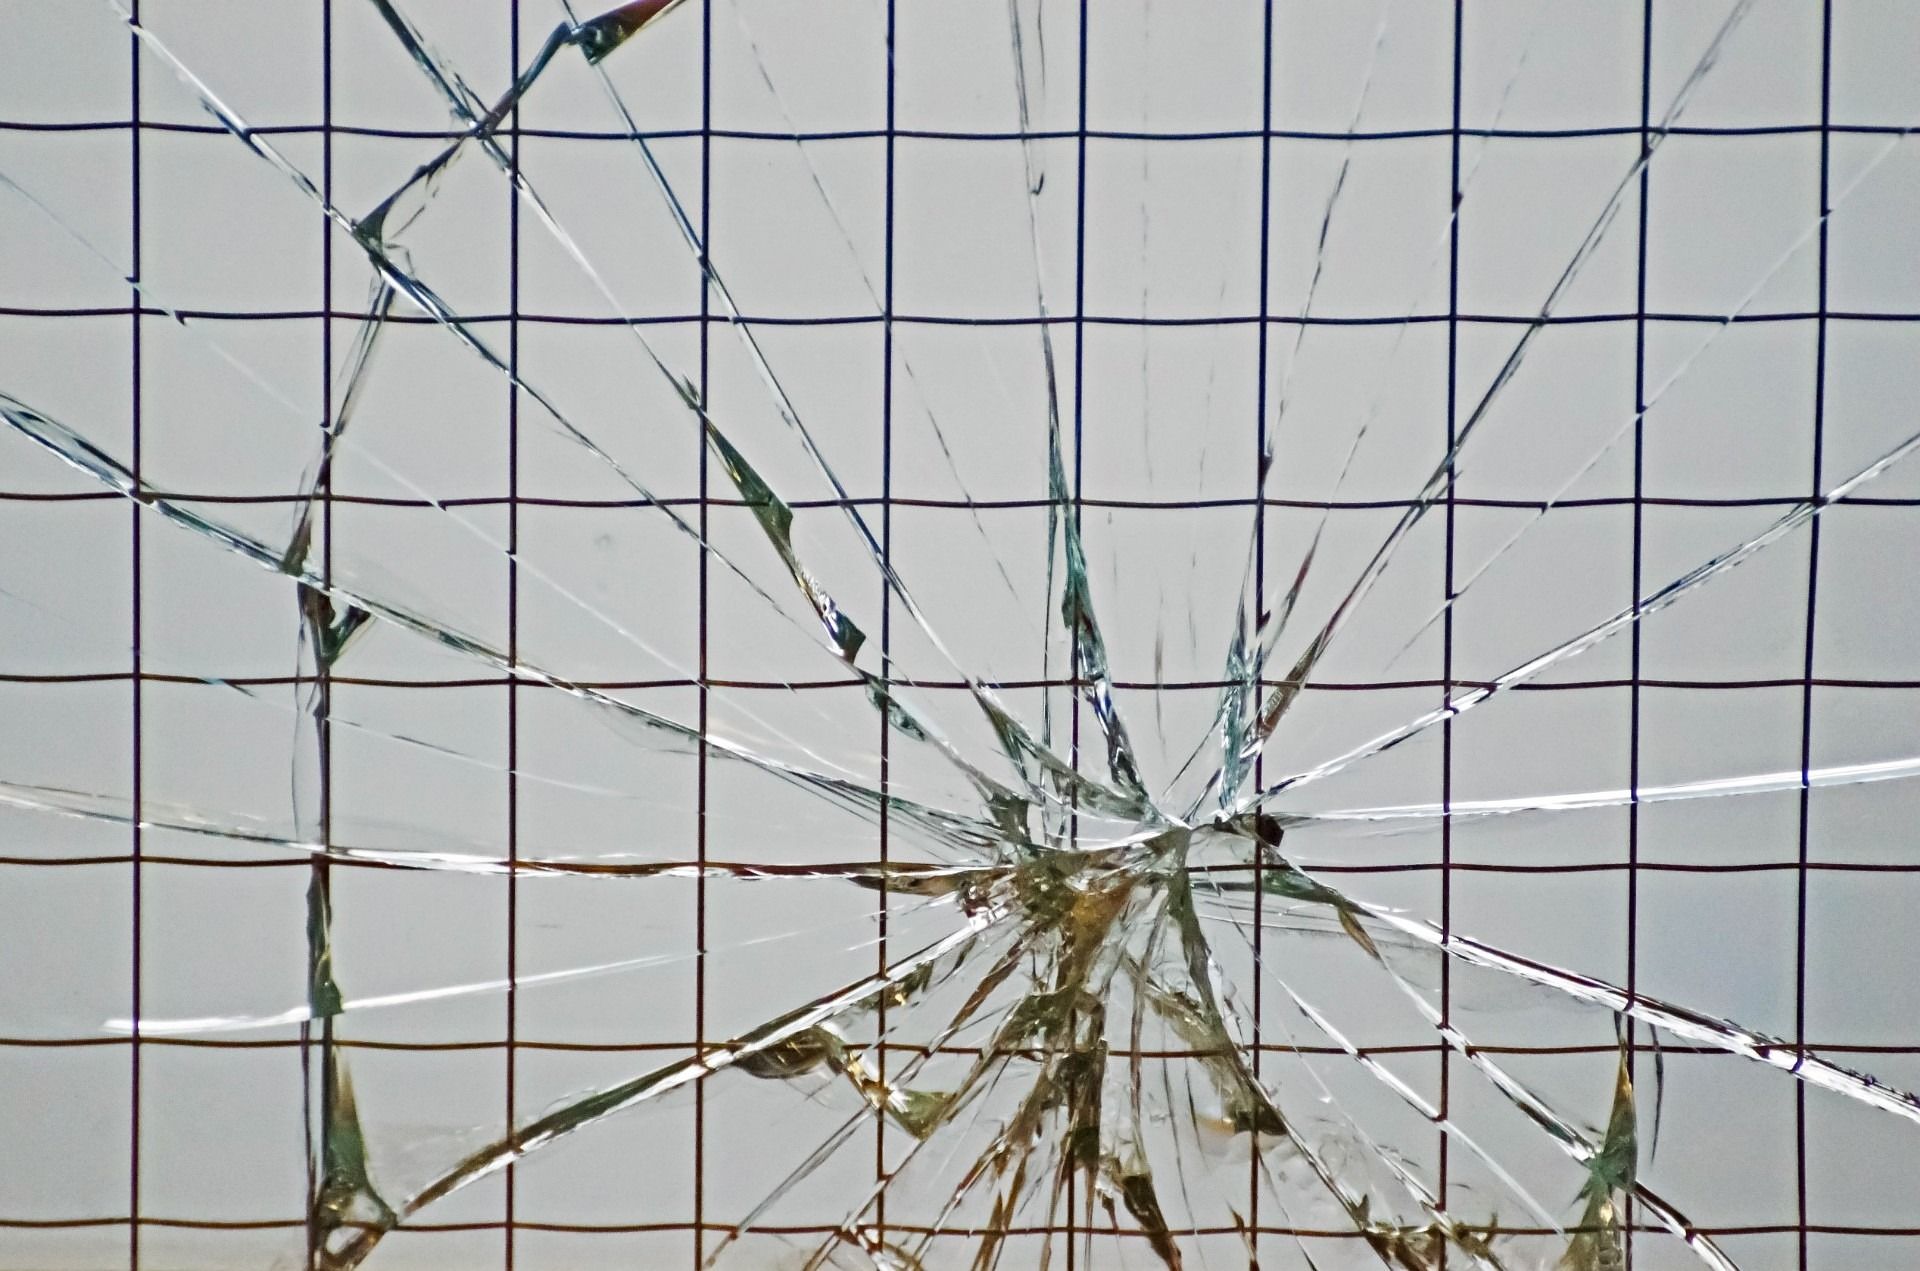 verre brisé, troublant la vue - Image par PublicDomainPictures de https://pixabay.com/fr/photos/contexte-violation-verre-cass%C3%A9-164695/